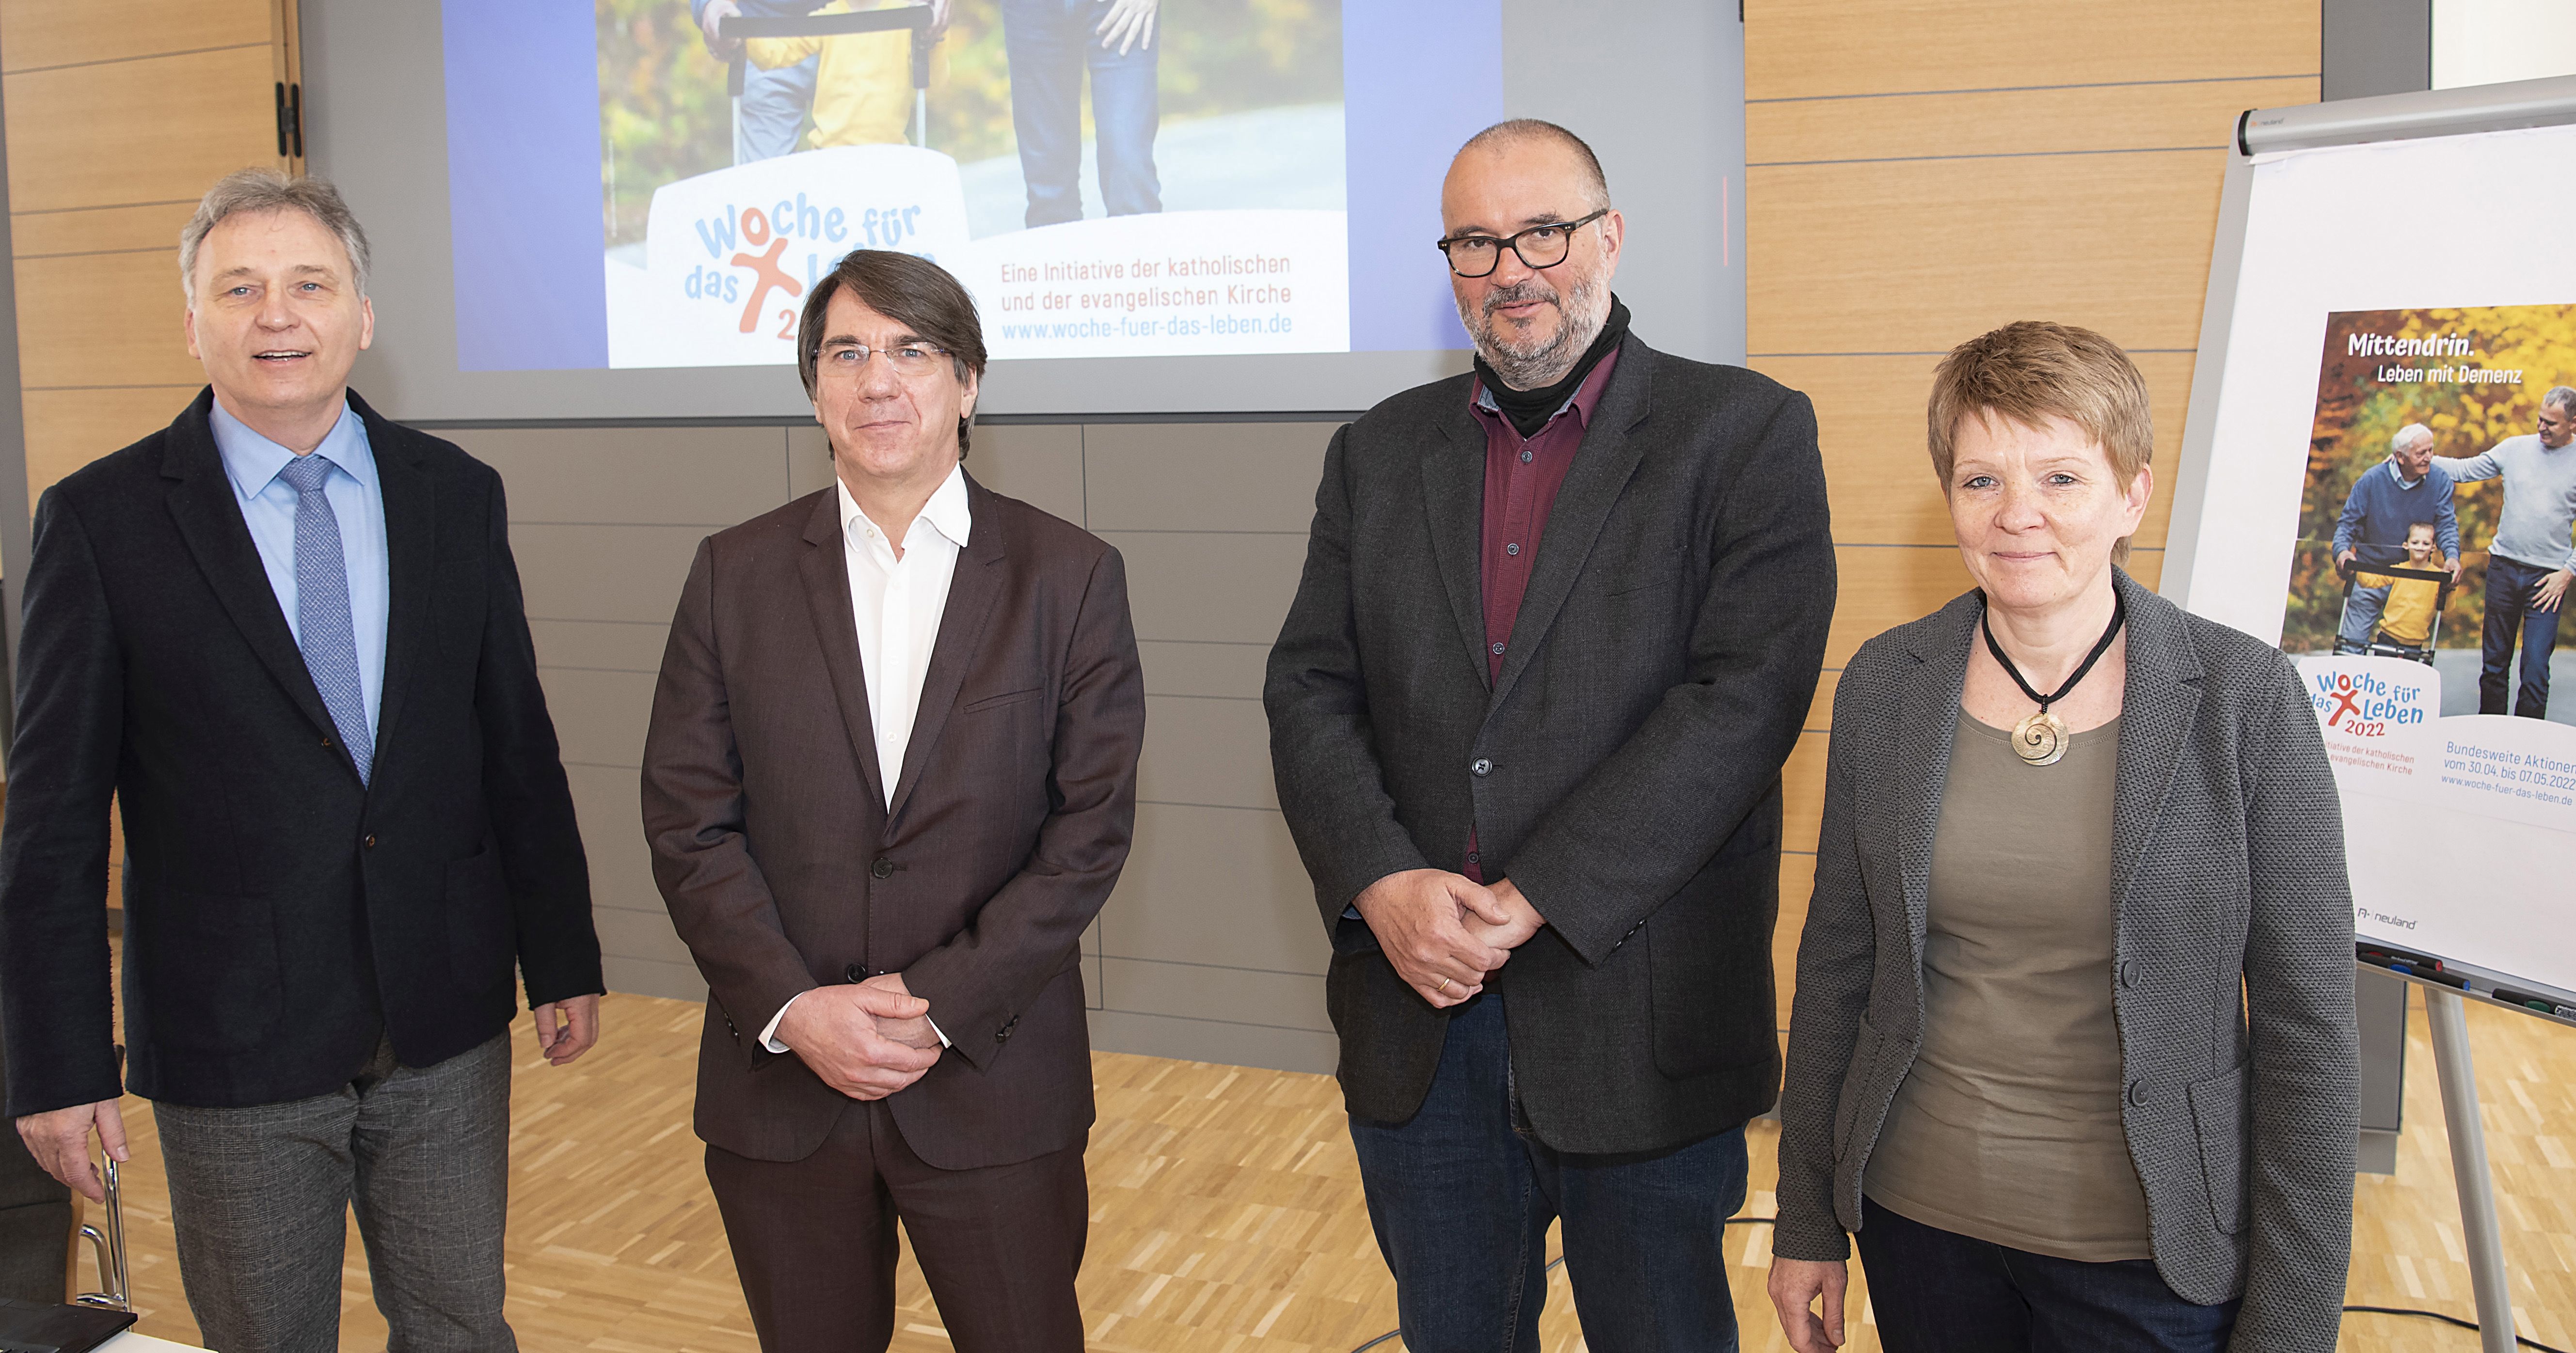 Das Foto zeigt die Referierenden und die Tagungsleiter der Informationsveranstaltung in Paderborn. V. l. n. r.: Dr. Werner Sosna, Prof. Dr. Johannes Pantel, Christoph Menz und Birgit Hasenbein.